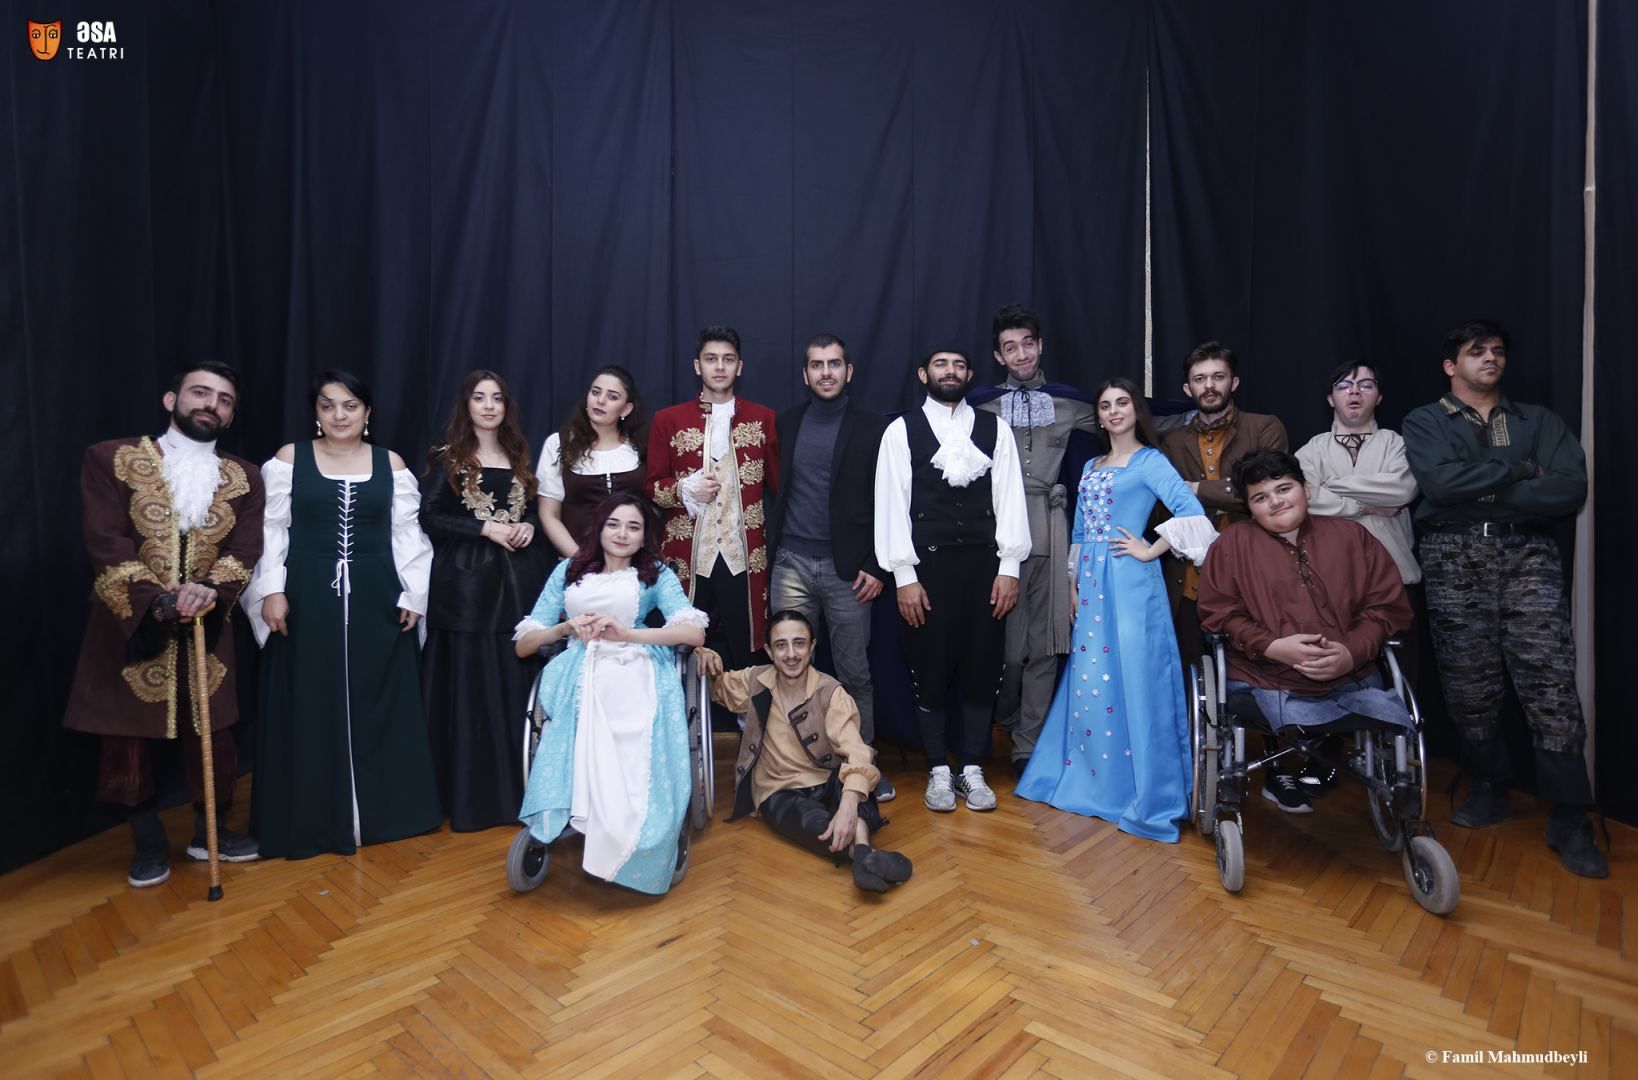 L'œuvre « Le petit Prince » de l'écrivain français Antoine de Saint-Exupéry dans le théâtre inclusif de l'Azerbaïdjan